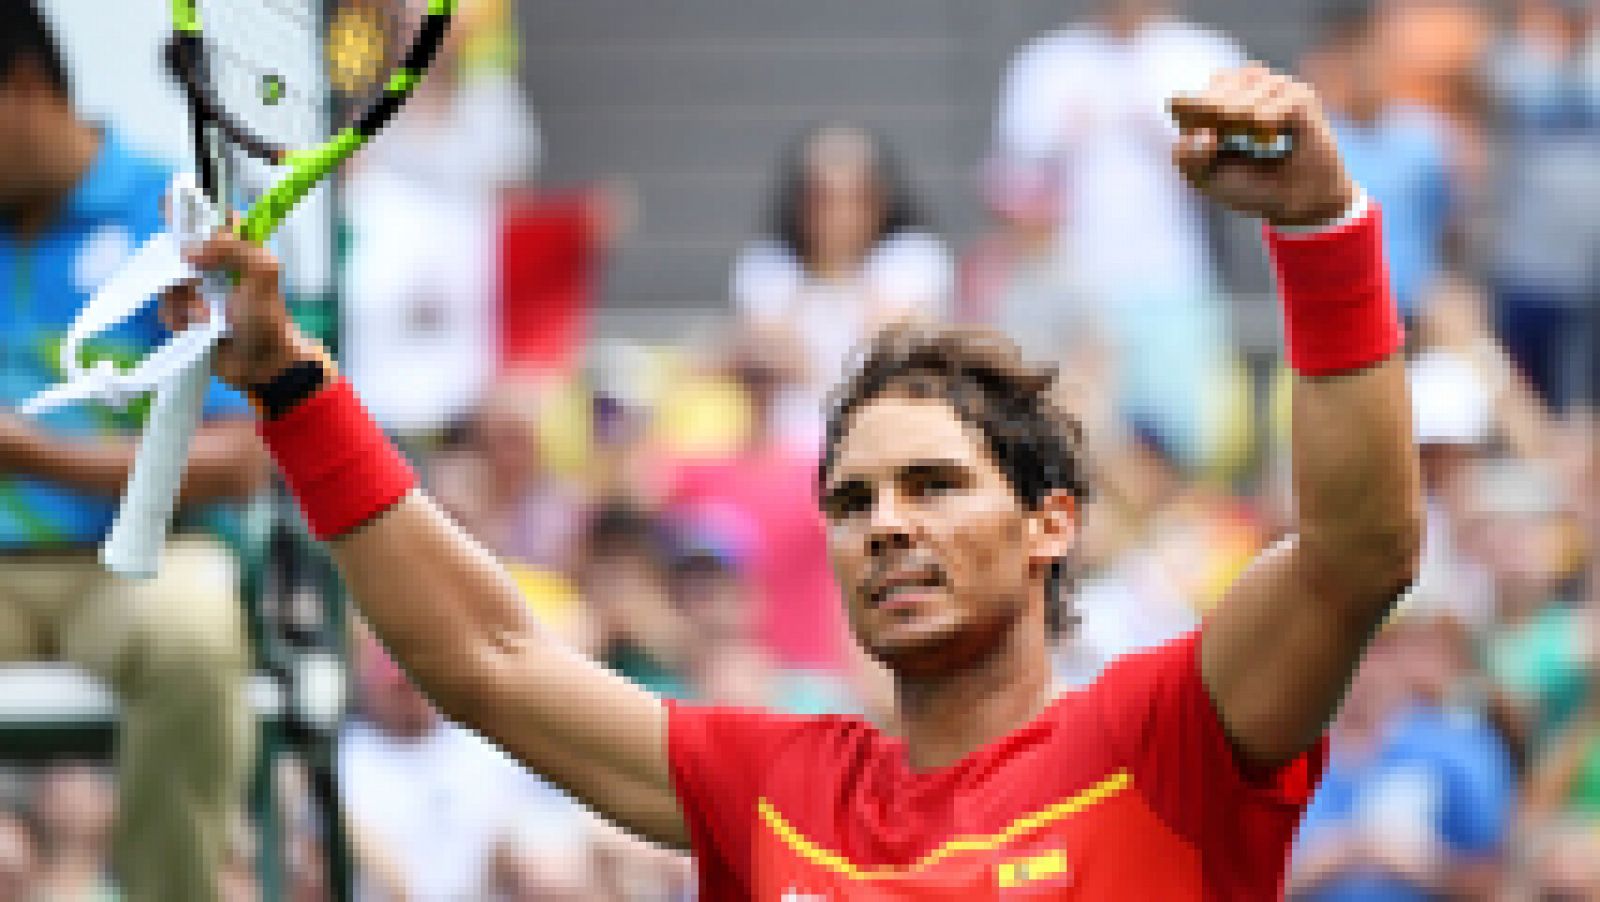 Río 2016 | Nadal vence a Simon Gilles y pasa a cuartos de final